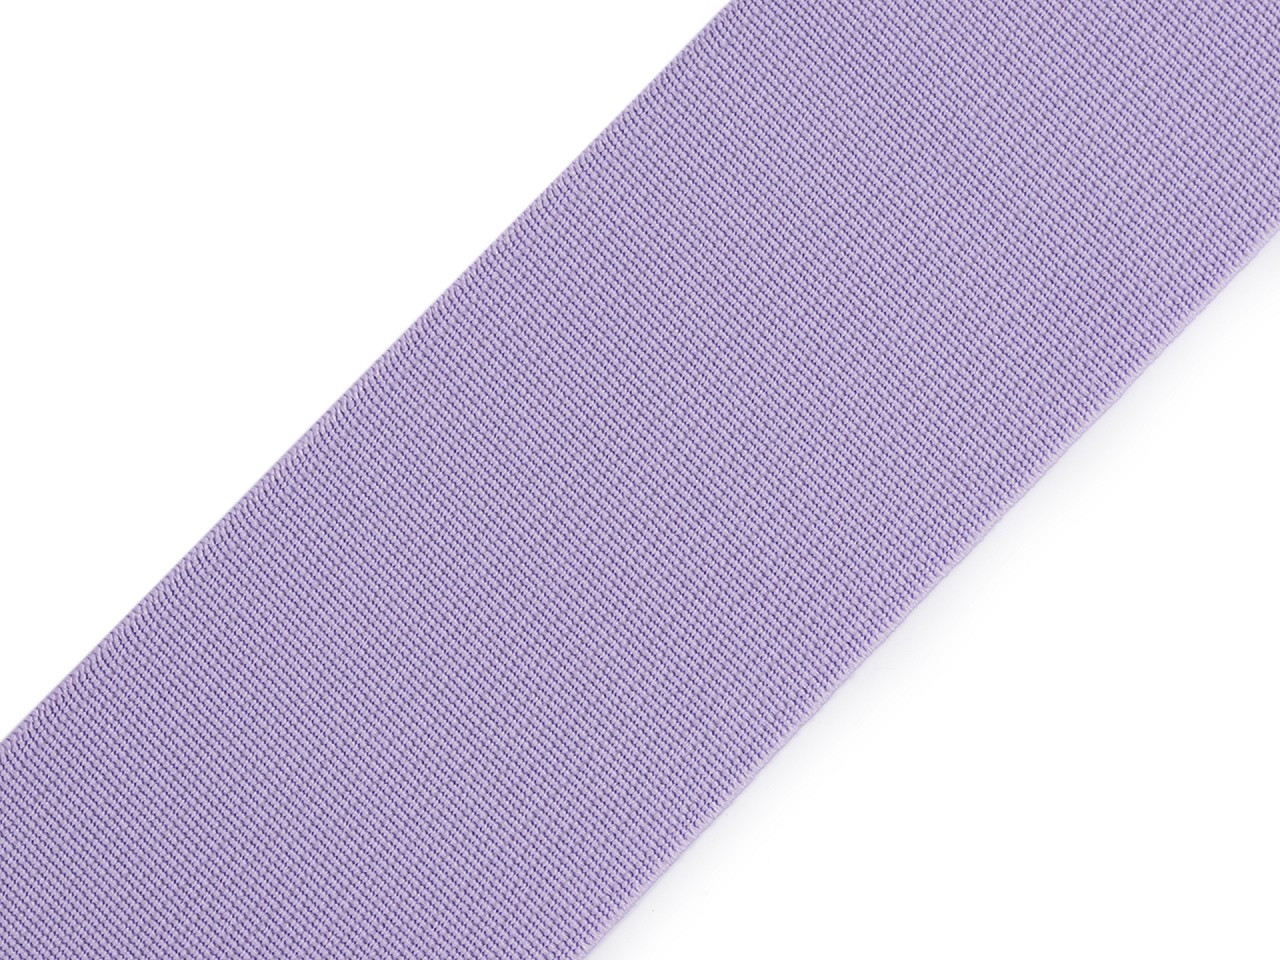 Pruženka hladká šíře 50 mm tkaná barevná, barva 1602 fialová lila